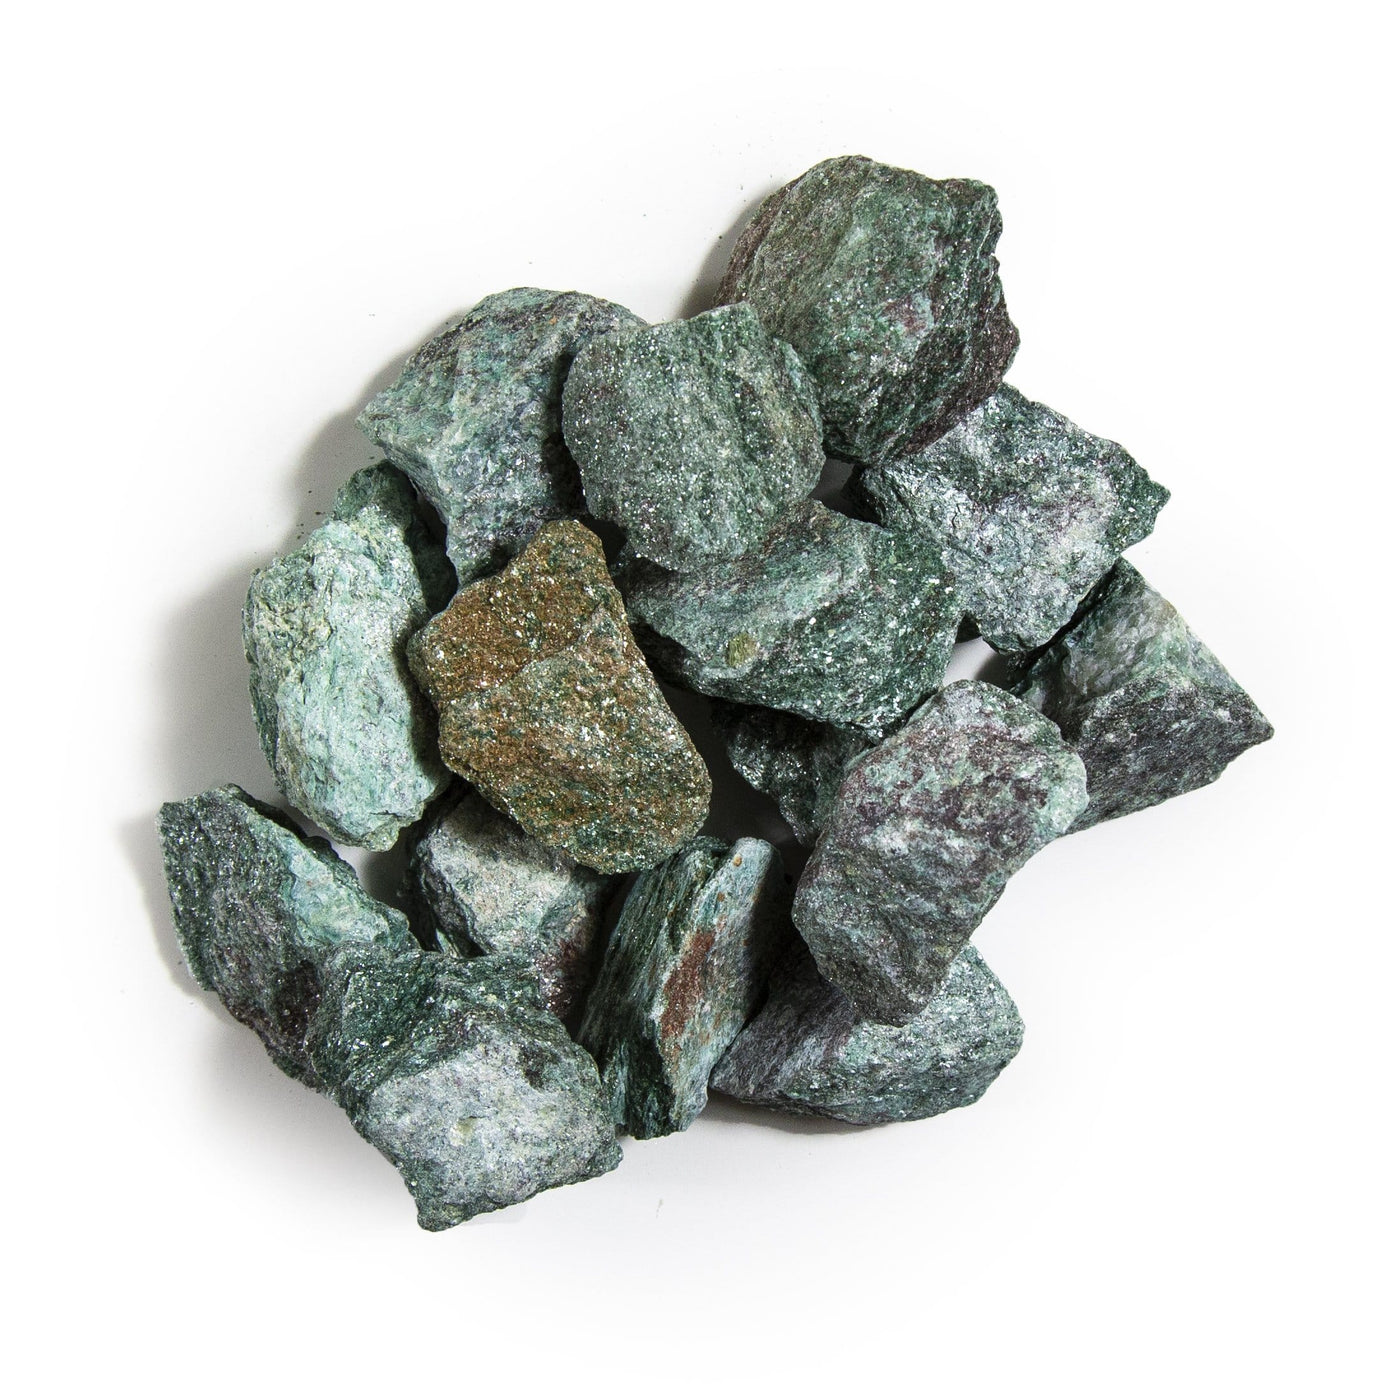 Fuchsite Rough Stones - in a pile